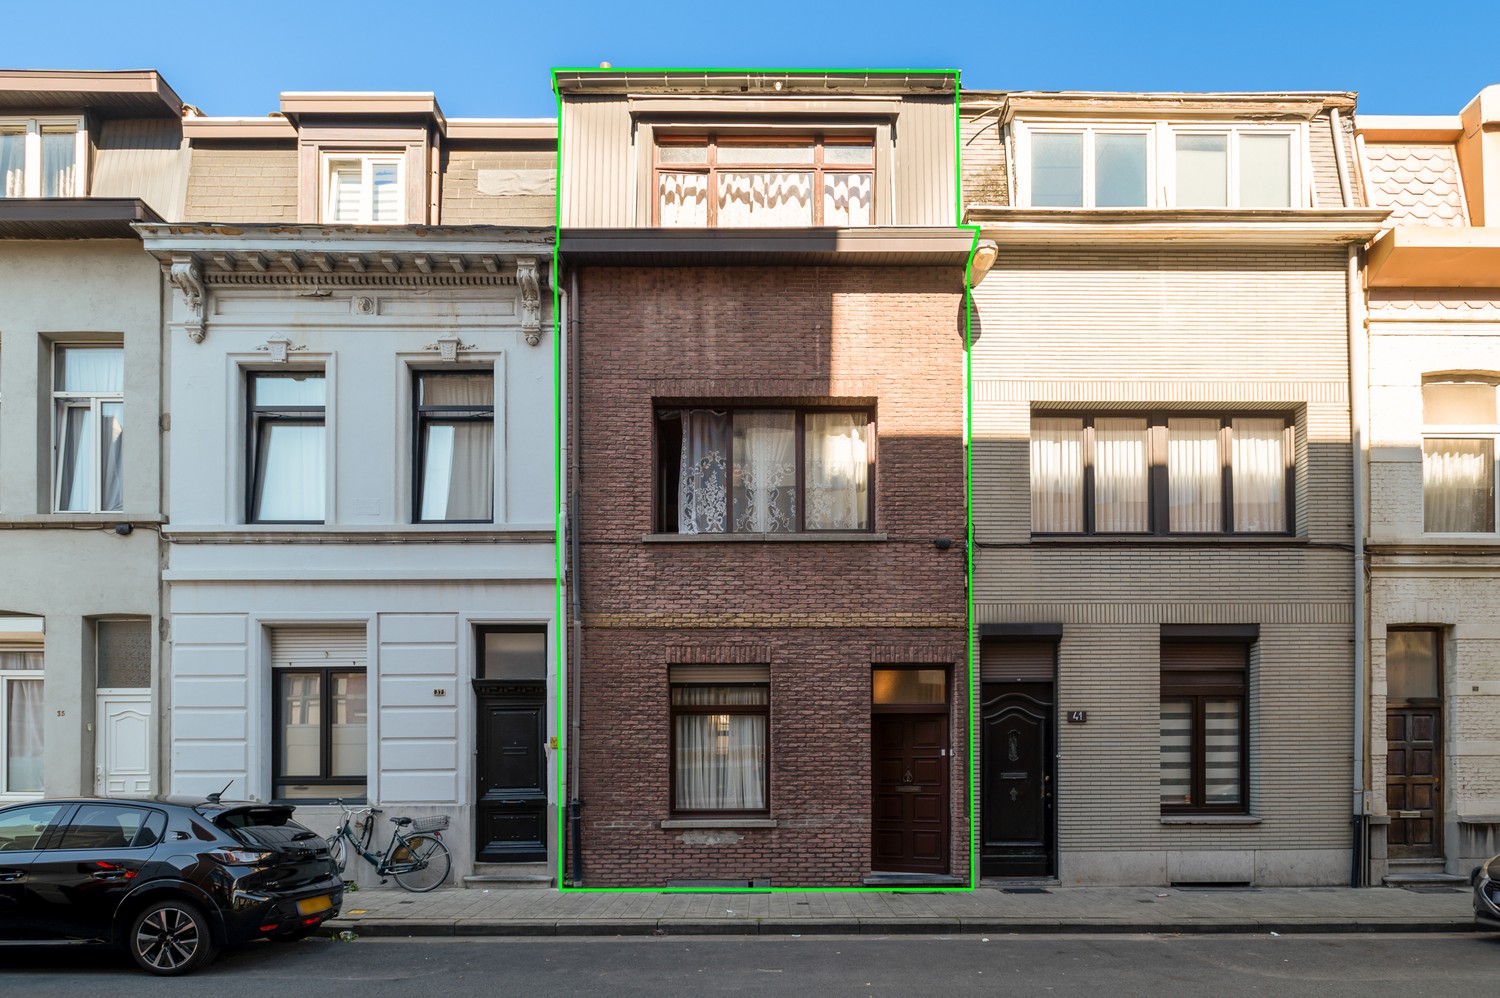 Gunstig gelegen en op te frissen woning met 4 ruime slaapkamers te koop te Antwerpen afbeelding 1